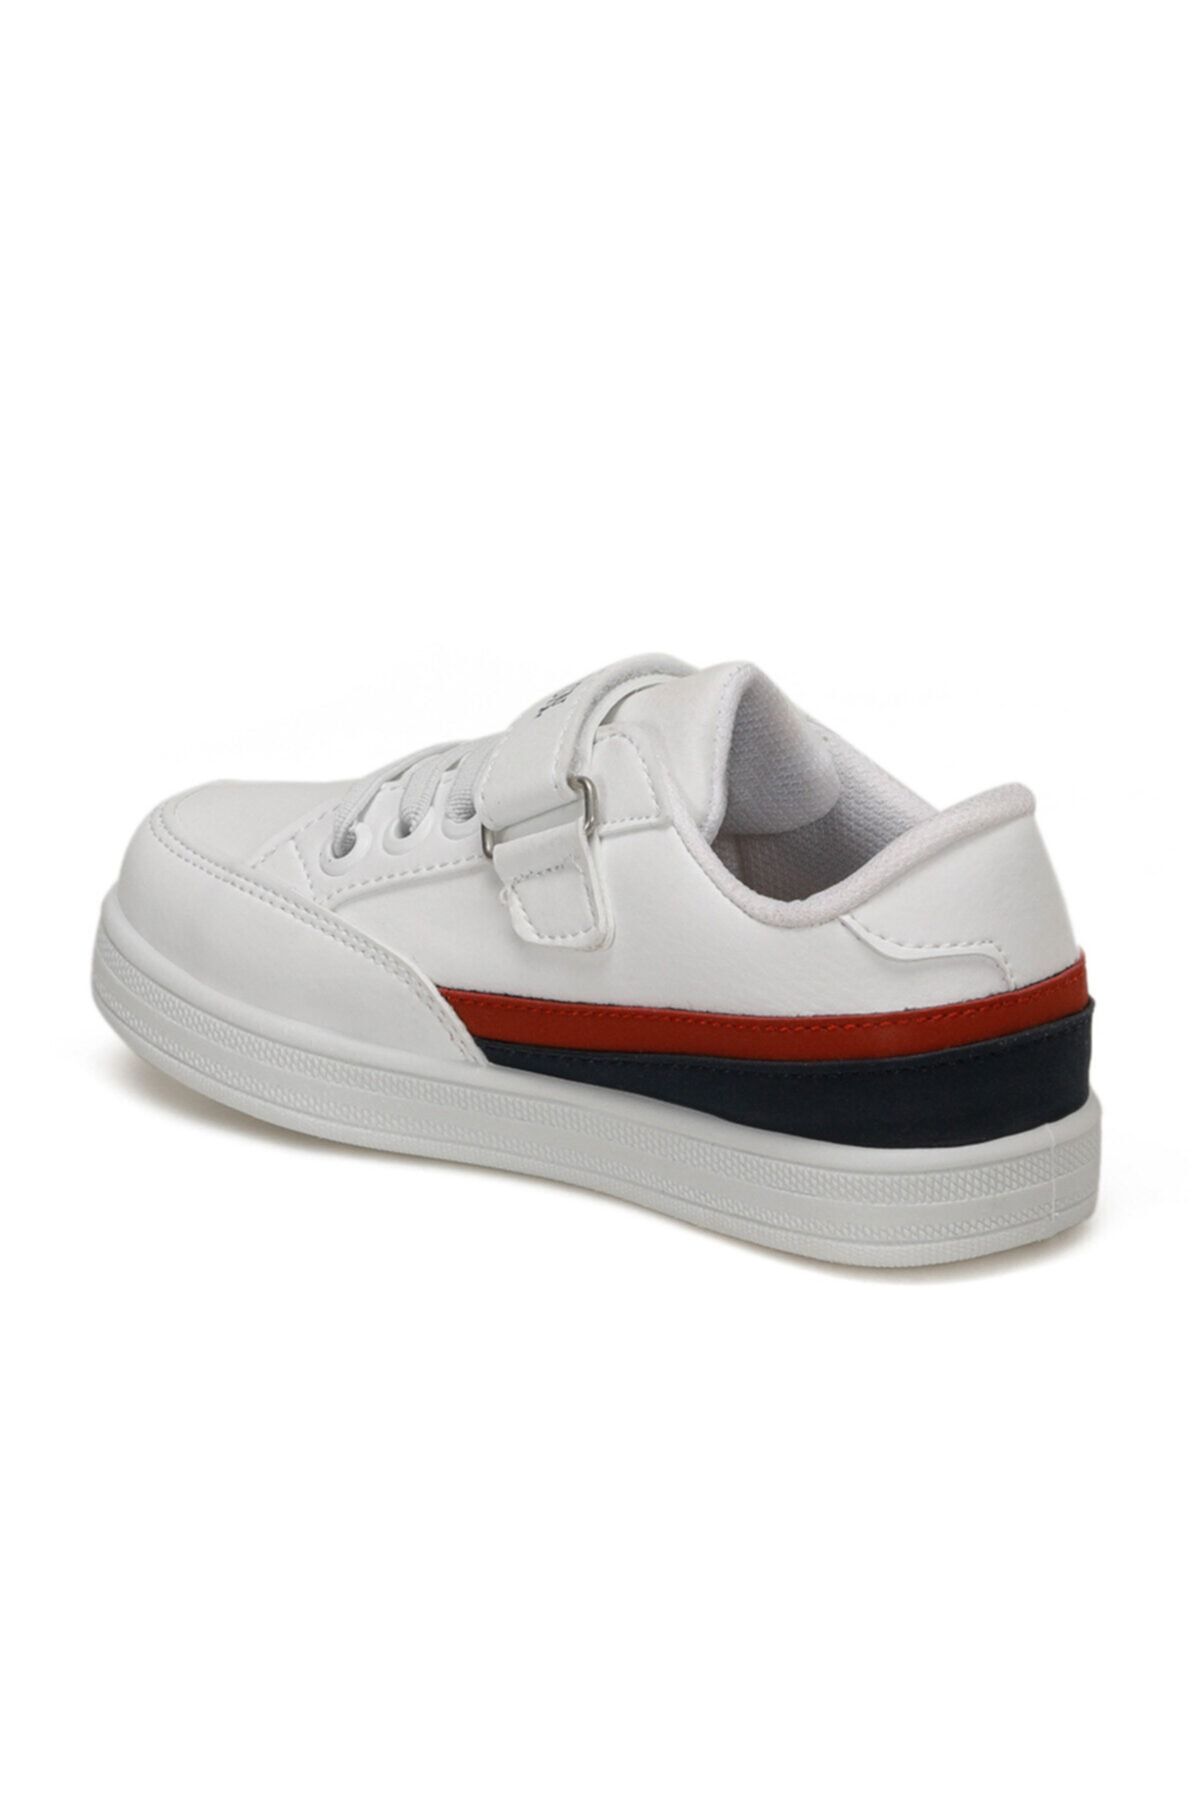 JAMAL 9PR Beyaz Erkek Çocuk Sneaker Ayakkabı 100429395